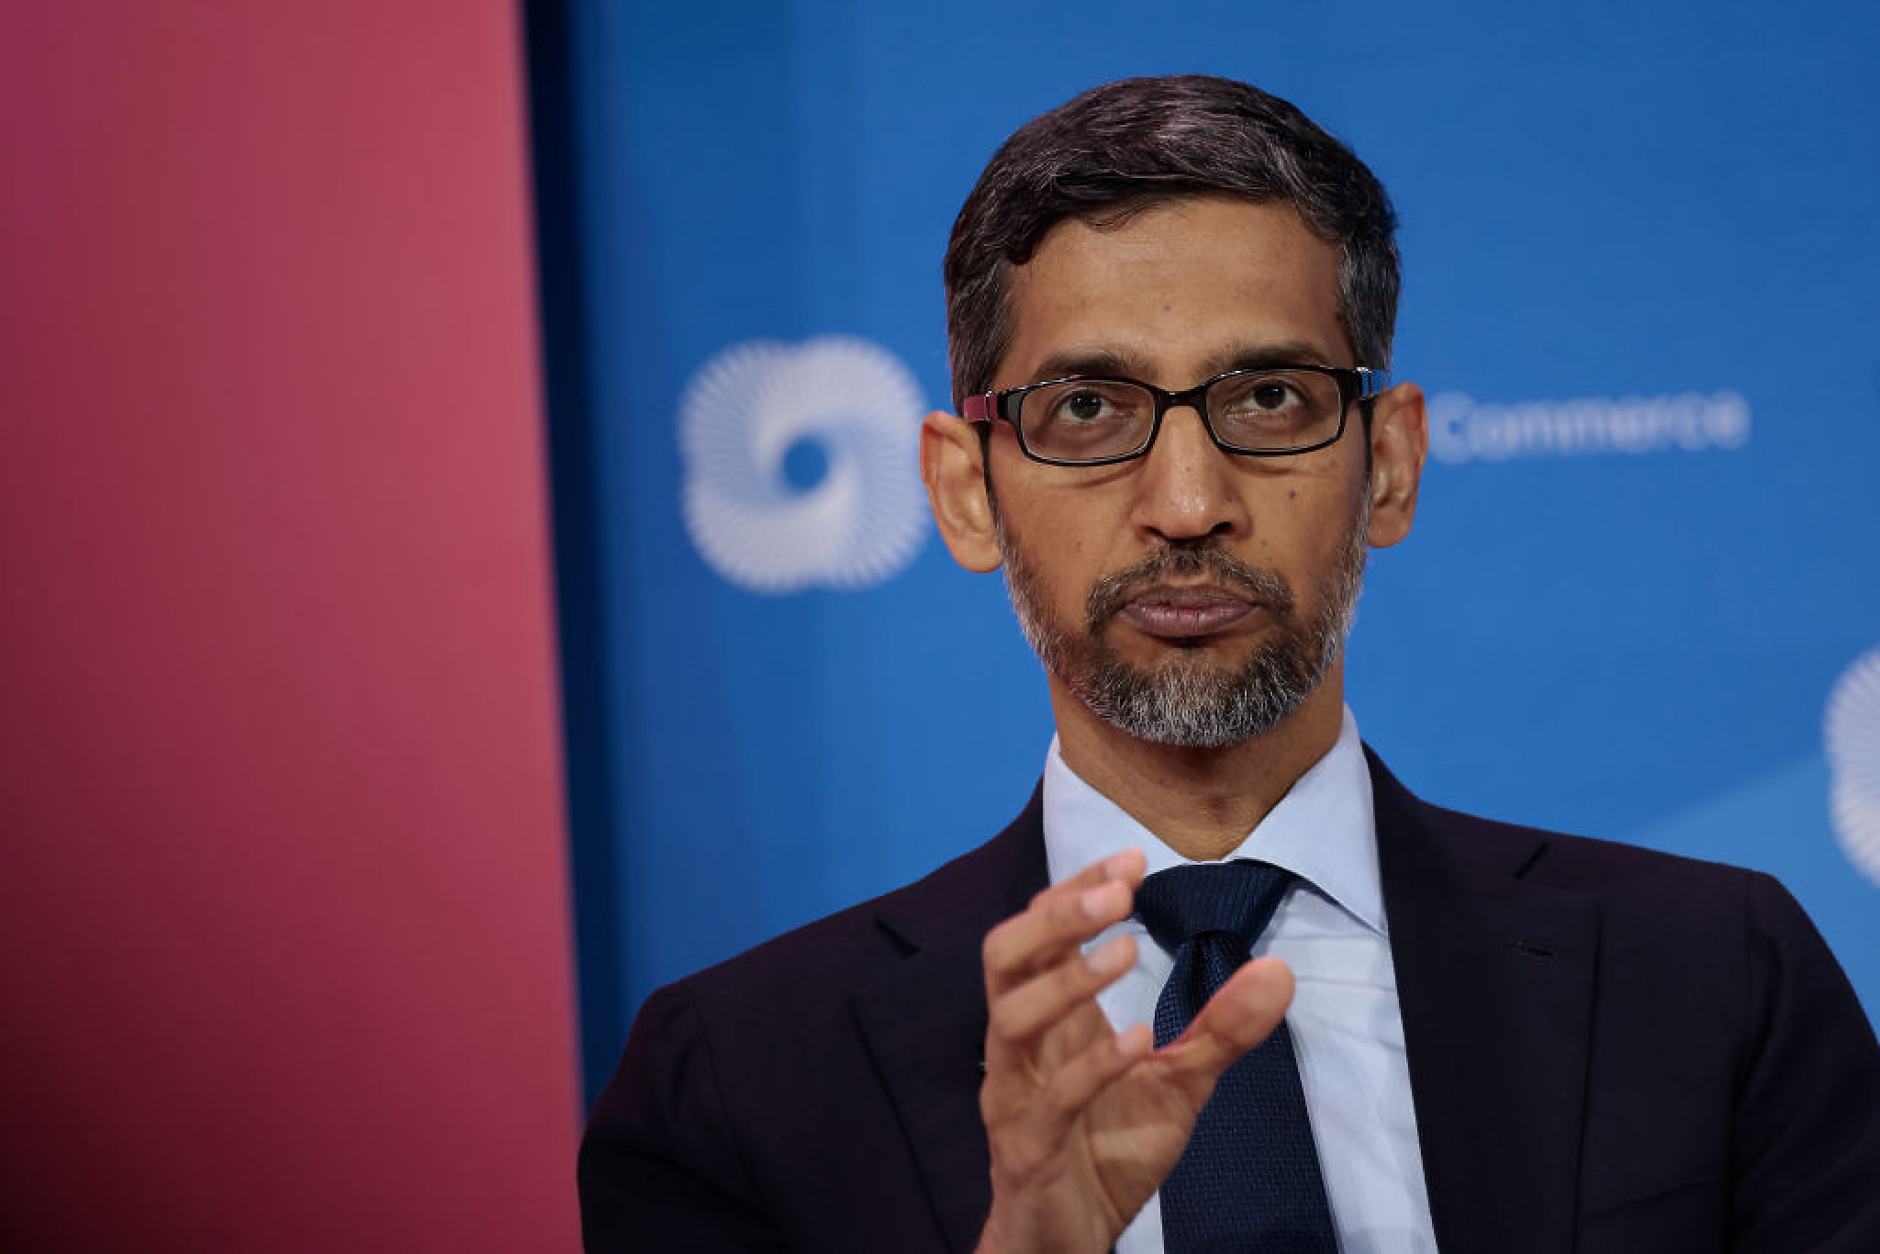 Шефът на Google призова за регулации на ИИ: Решенията не трябва да се взимат от компаниите